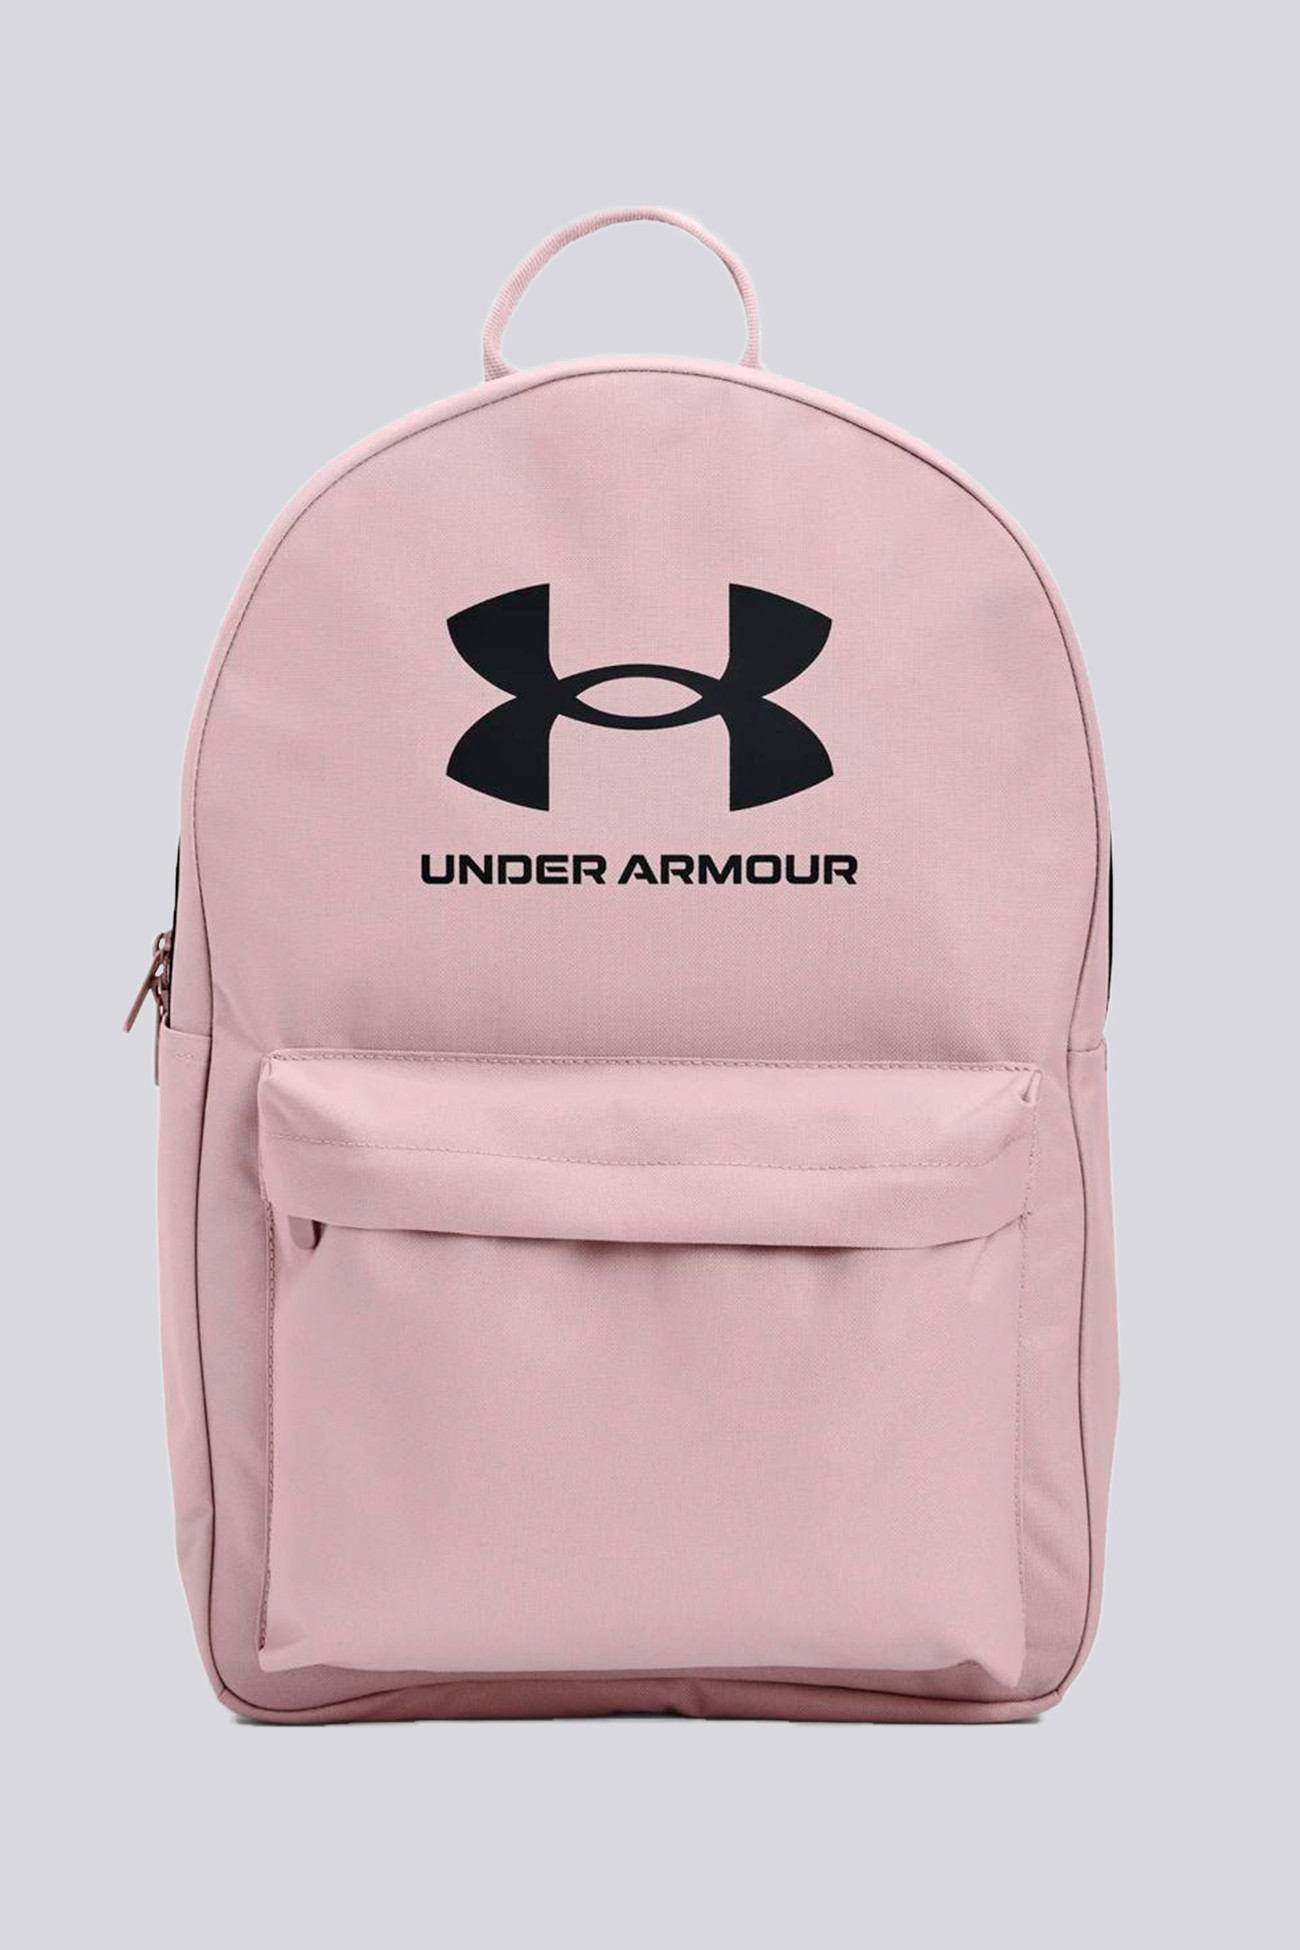 Рюкзак Under Armour Ua Loudon Backpack рожевий 1364186-667 изображение 2